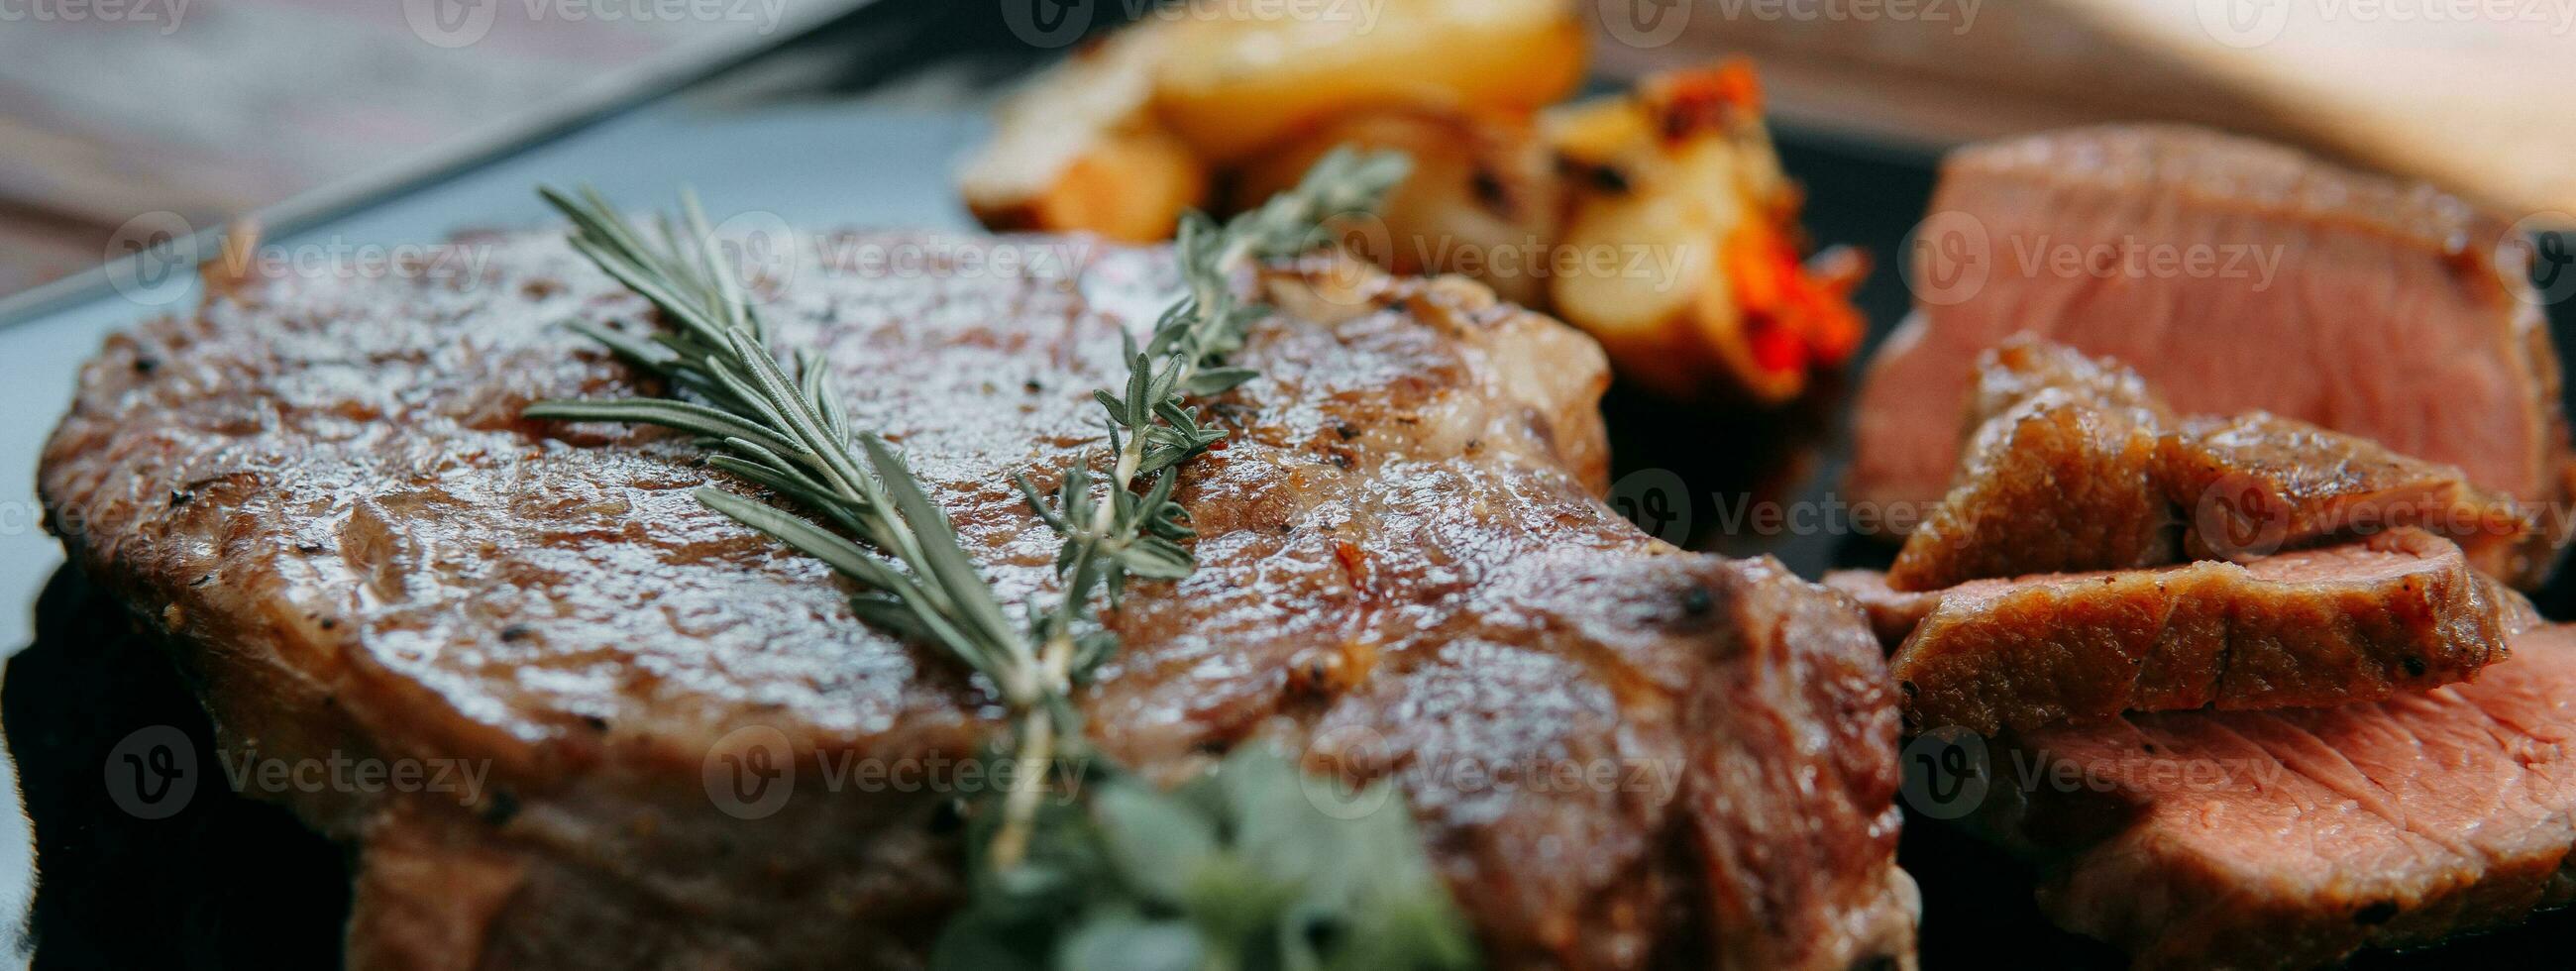 du boeuf steaks sur une noir assiette avec légumes verts. photo